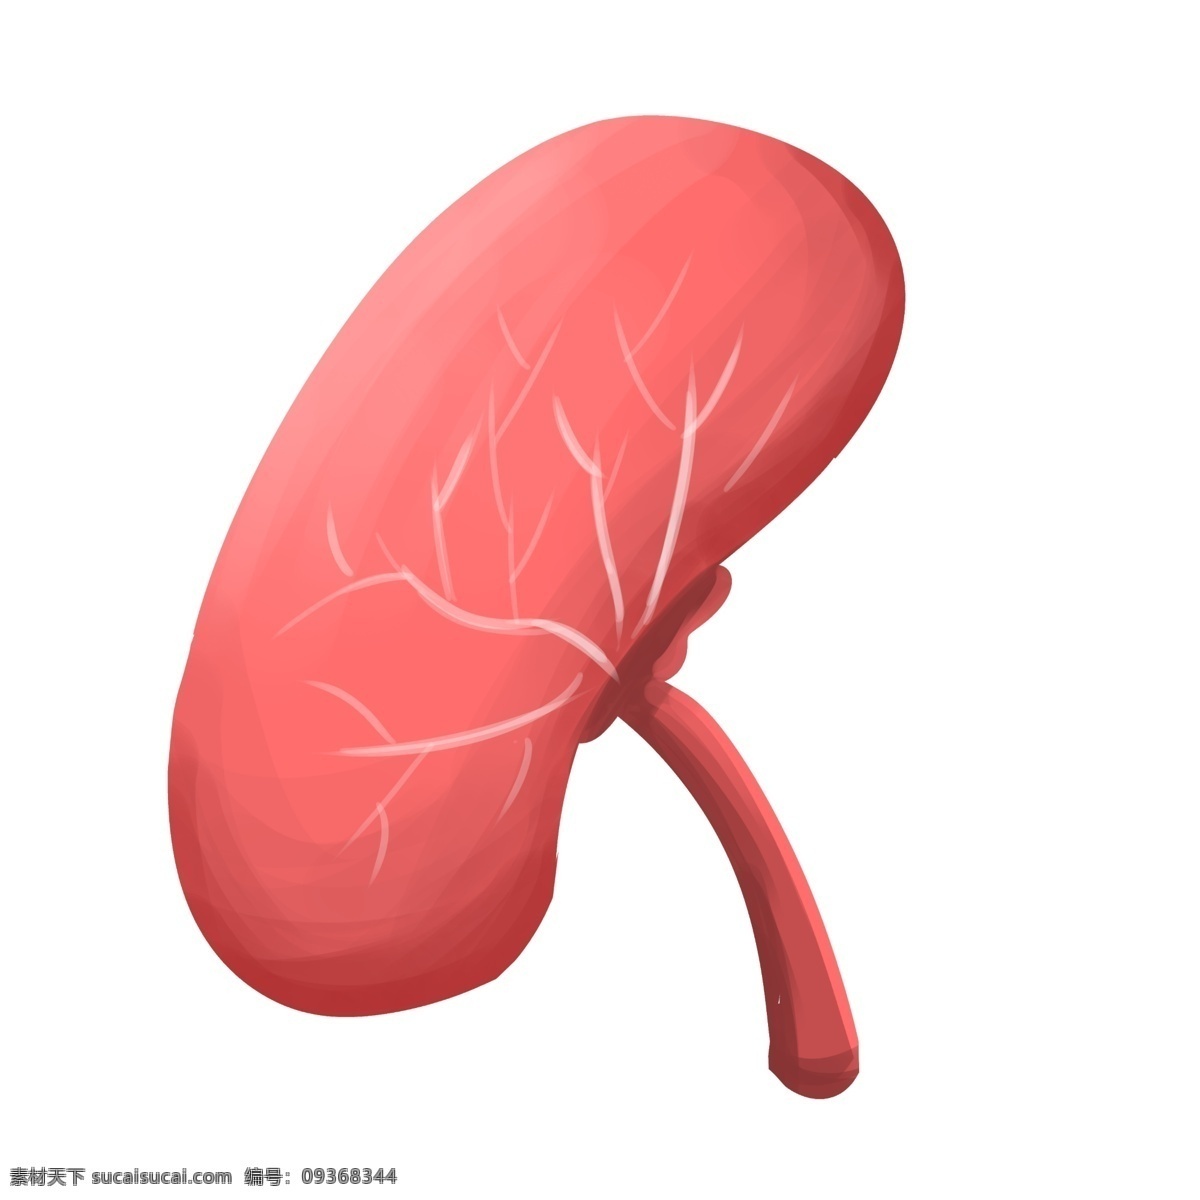 医疗 医学 人体 器官 心 肺 肝脏 脑 胃 人体器官 卡通人体器官 人体脏器插画